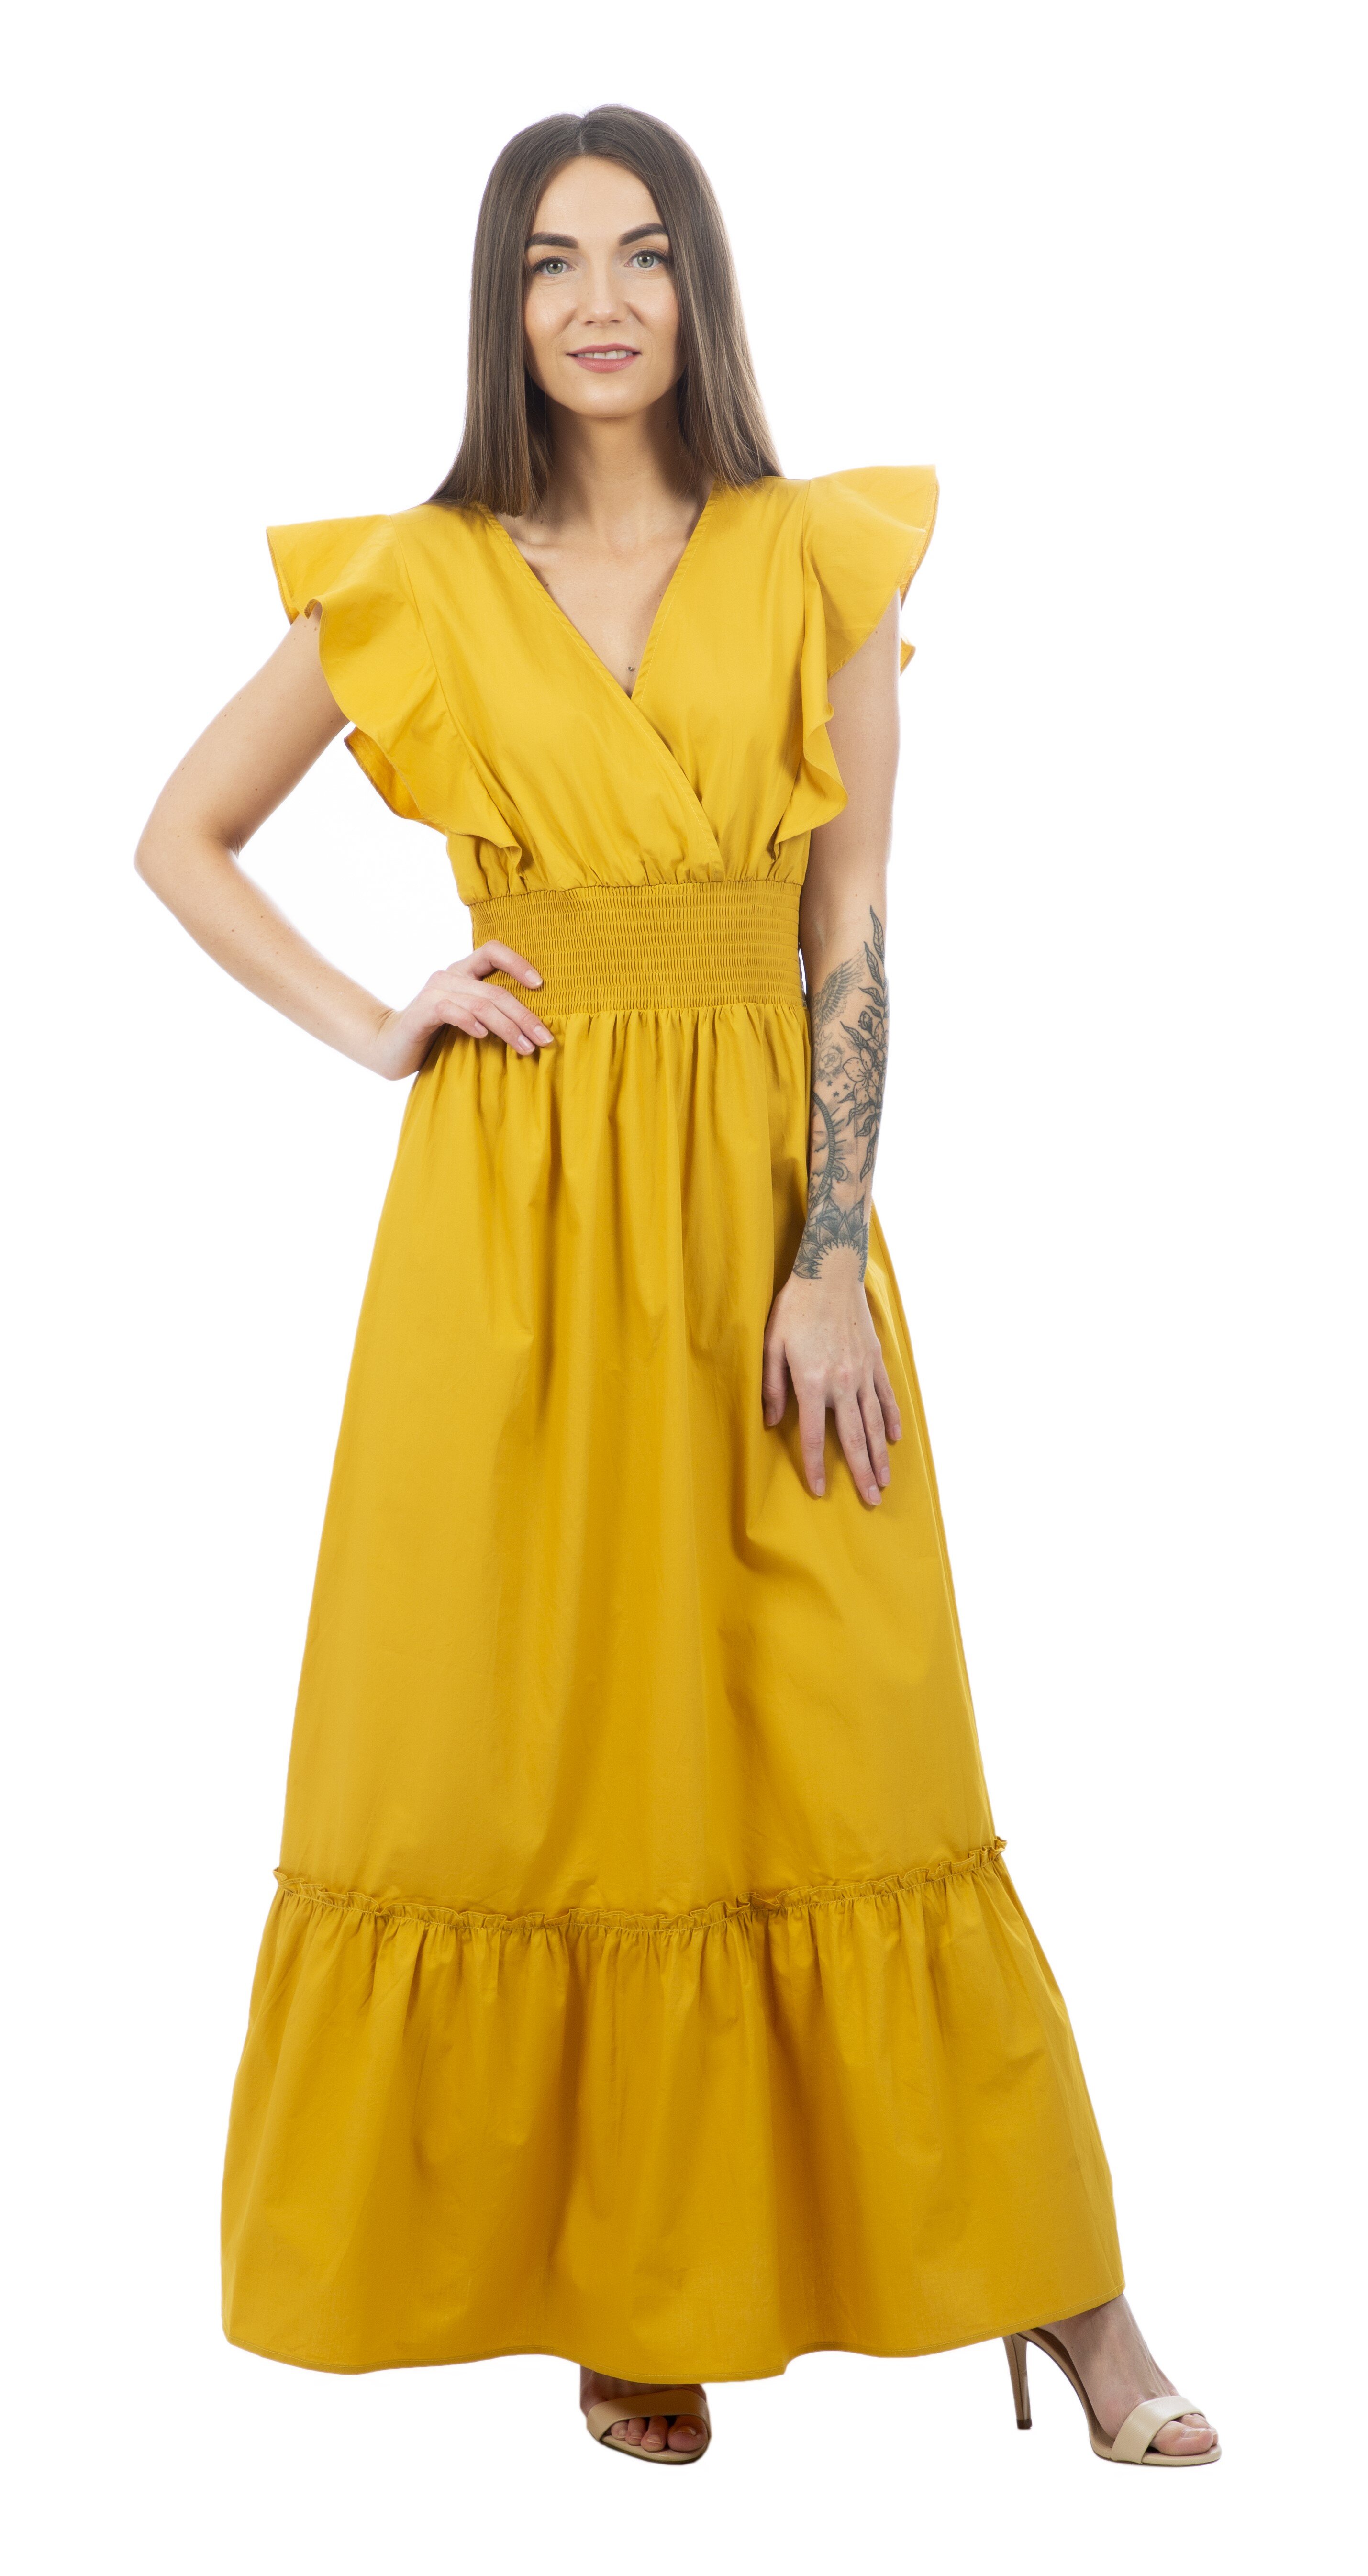 Molly Bracken moteriška suknelė, geltona kaina | pigu.lt